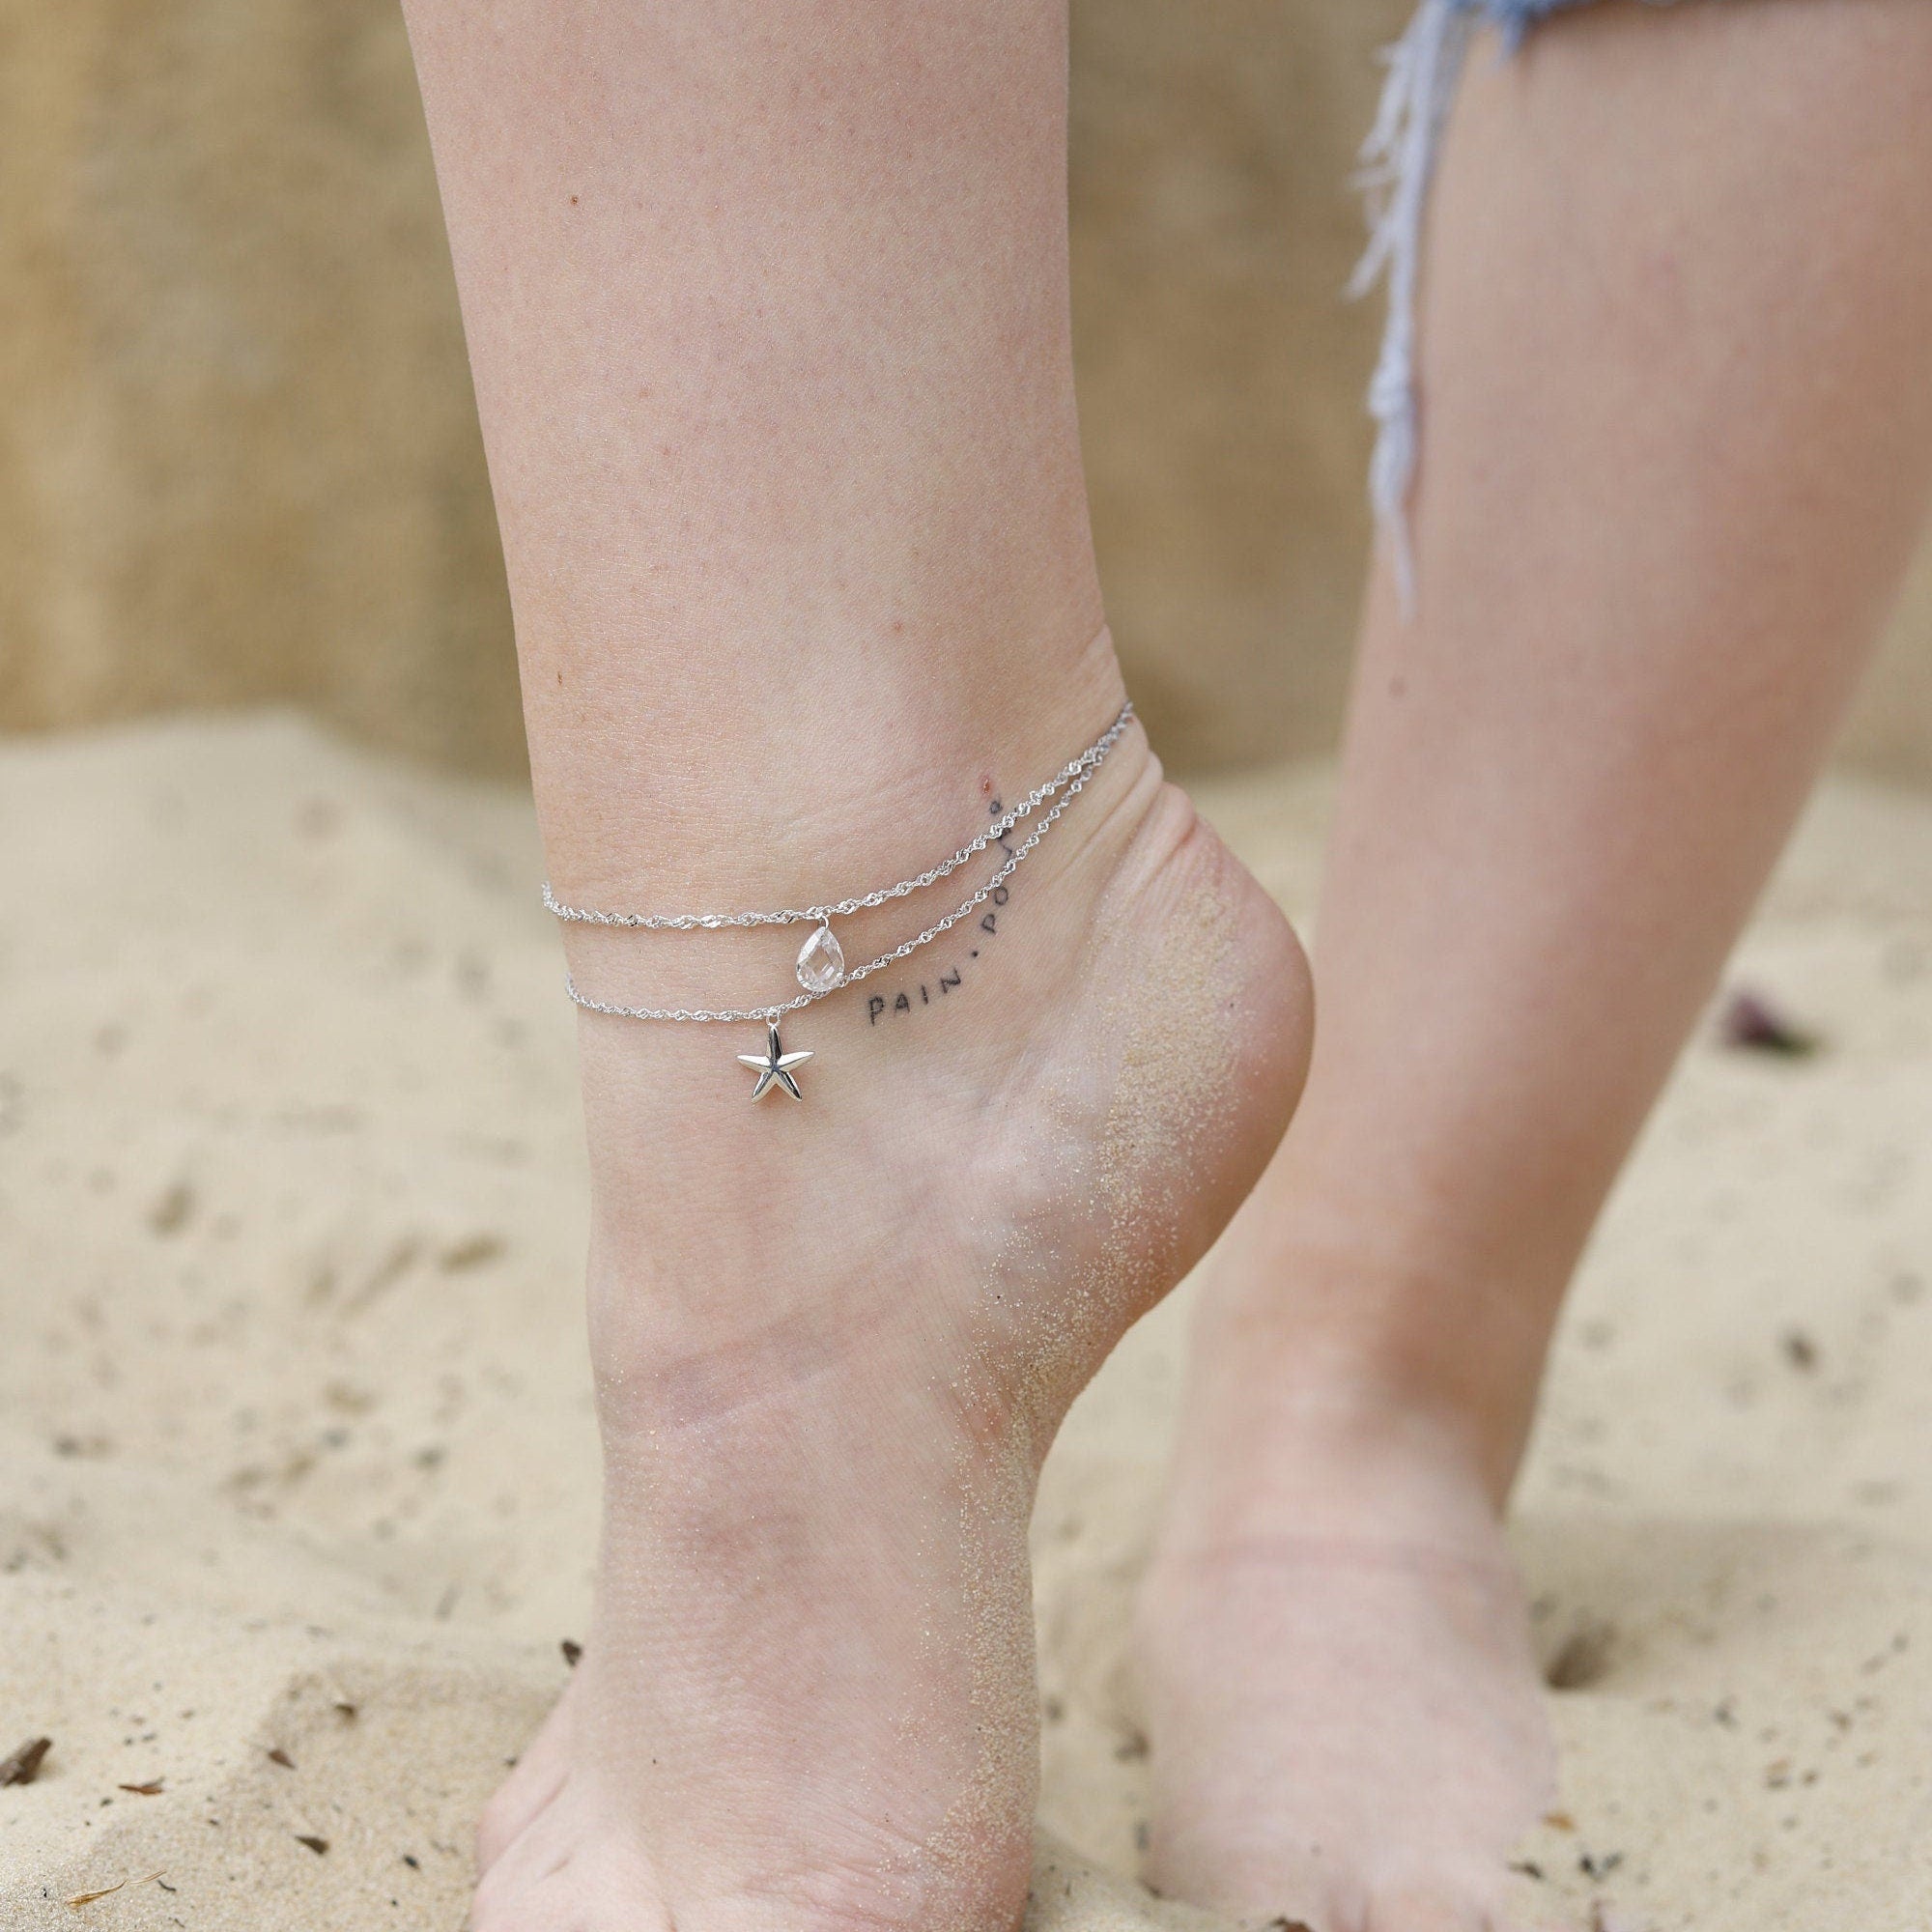 Celeste - Simple Star Style Anklet, Gold Anklets, Silver Anklets, Anklets for Women